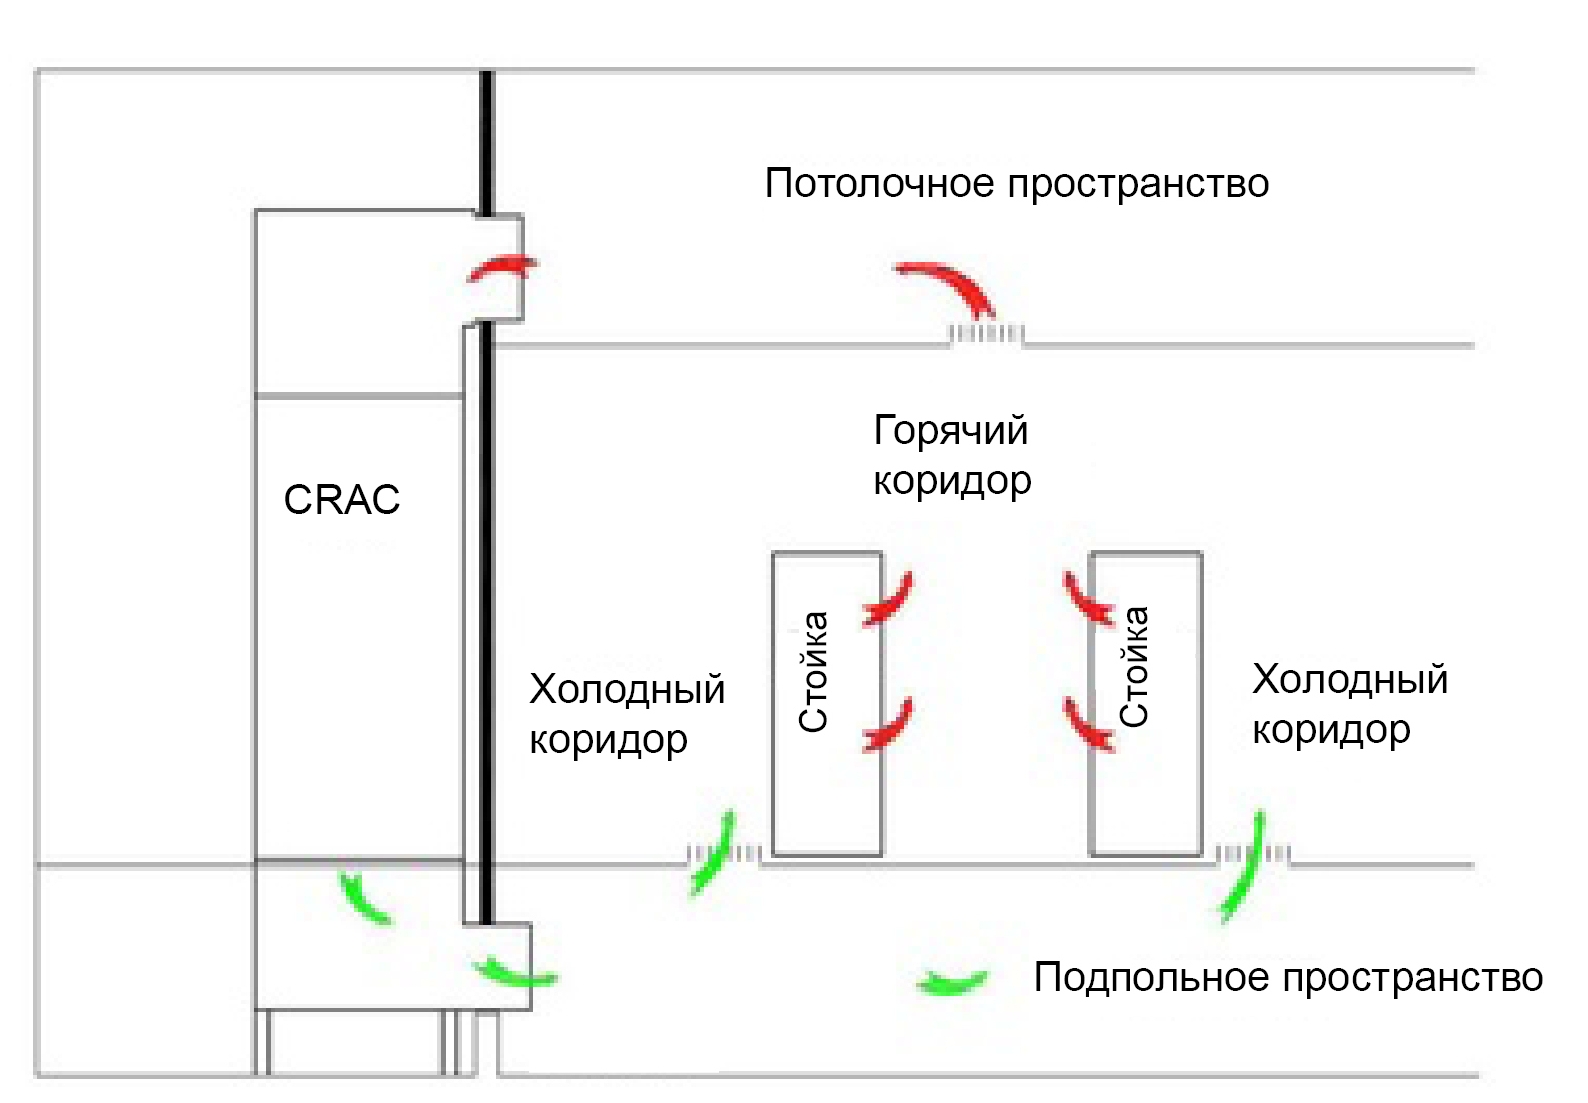 DC-Citi-CRAC_рус.jpg